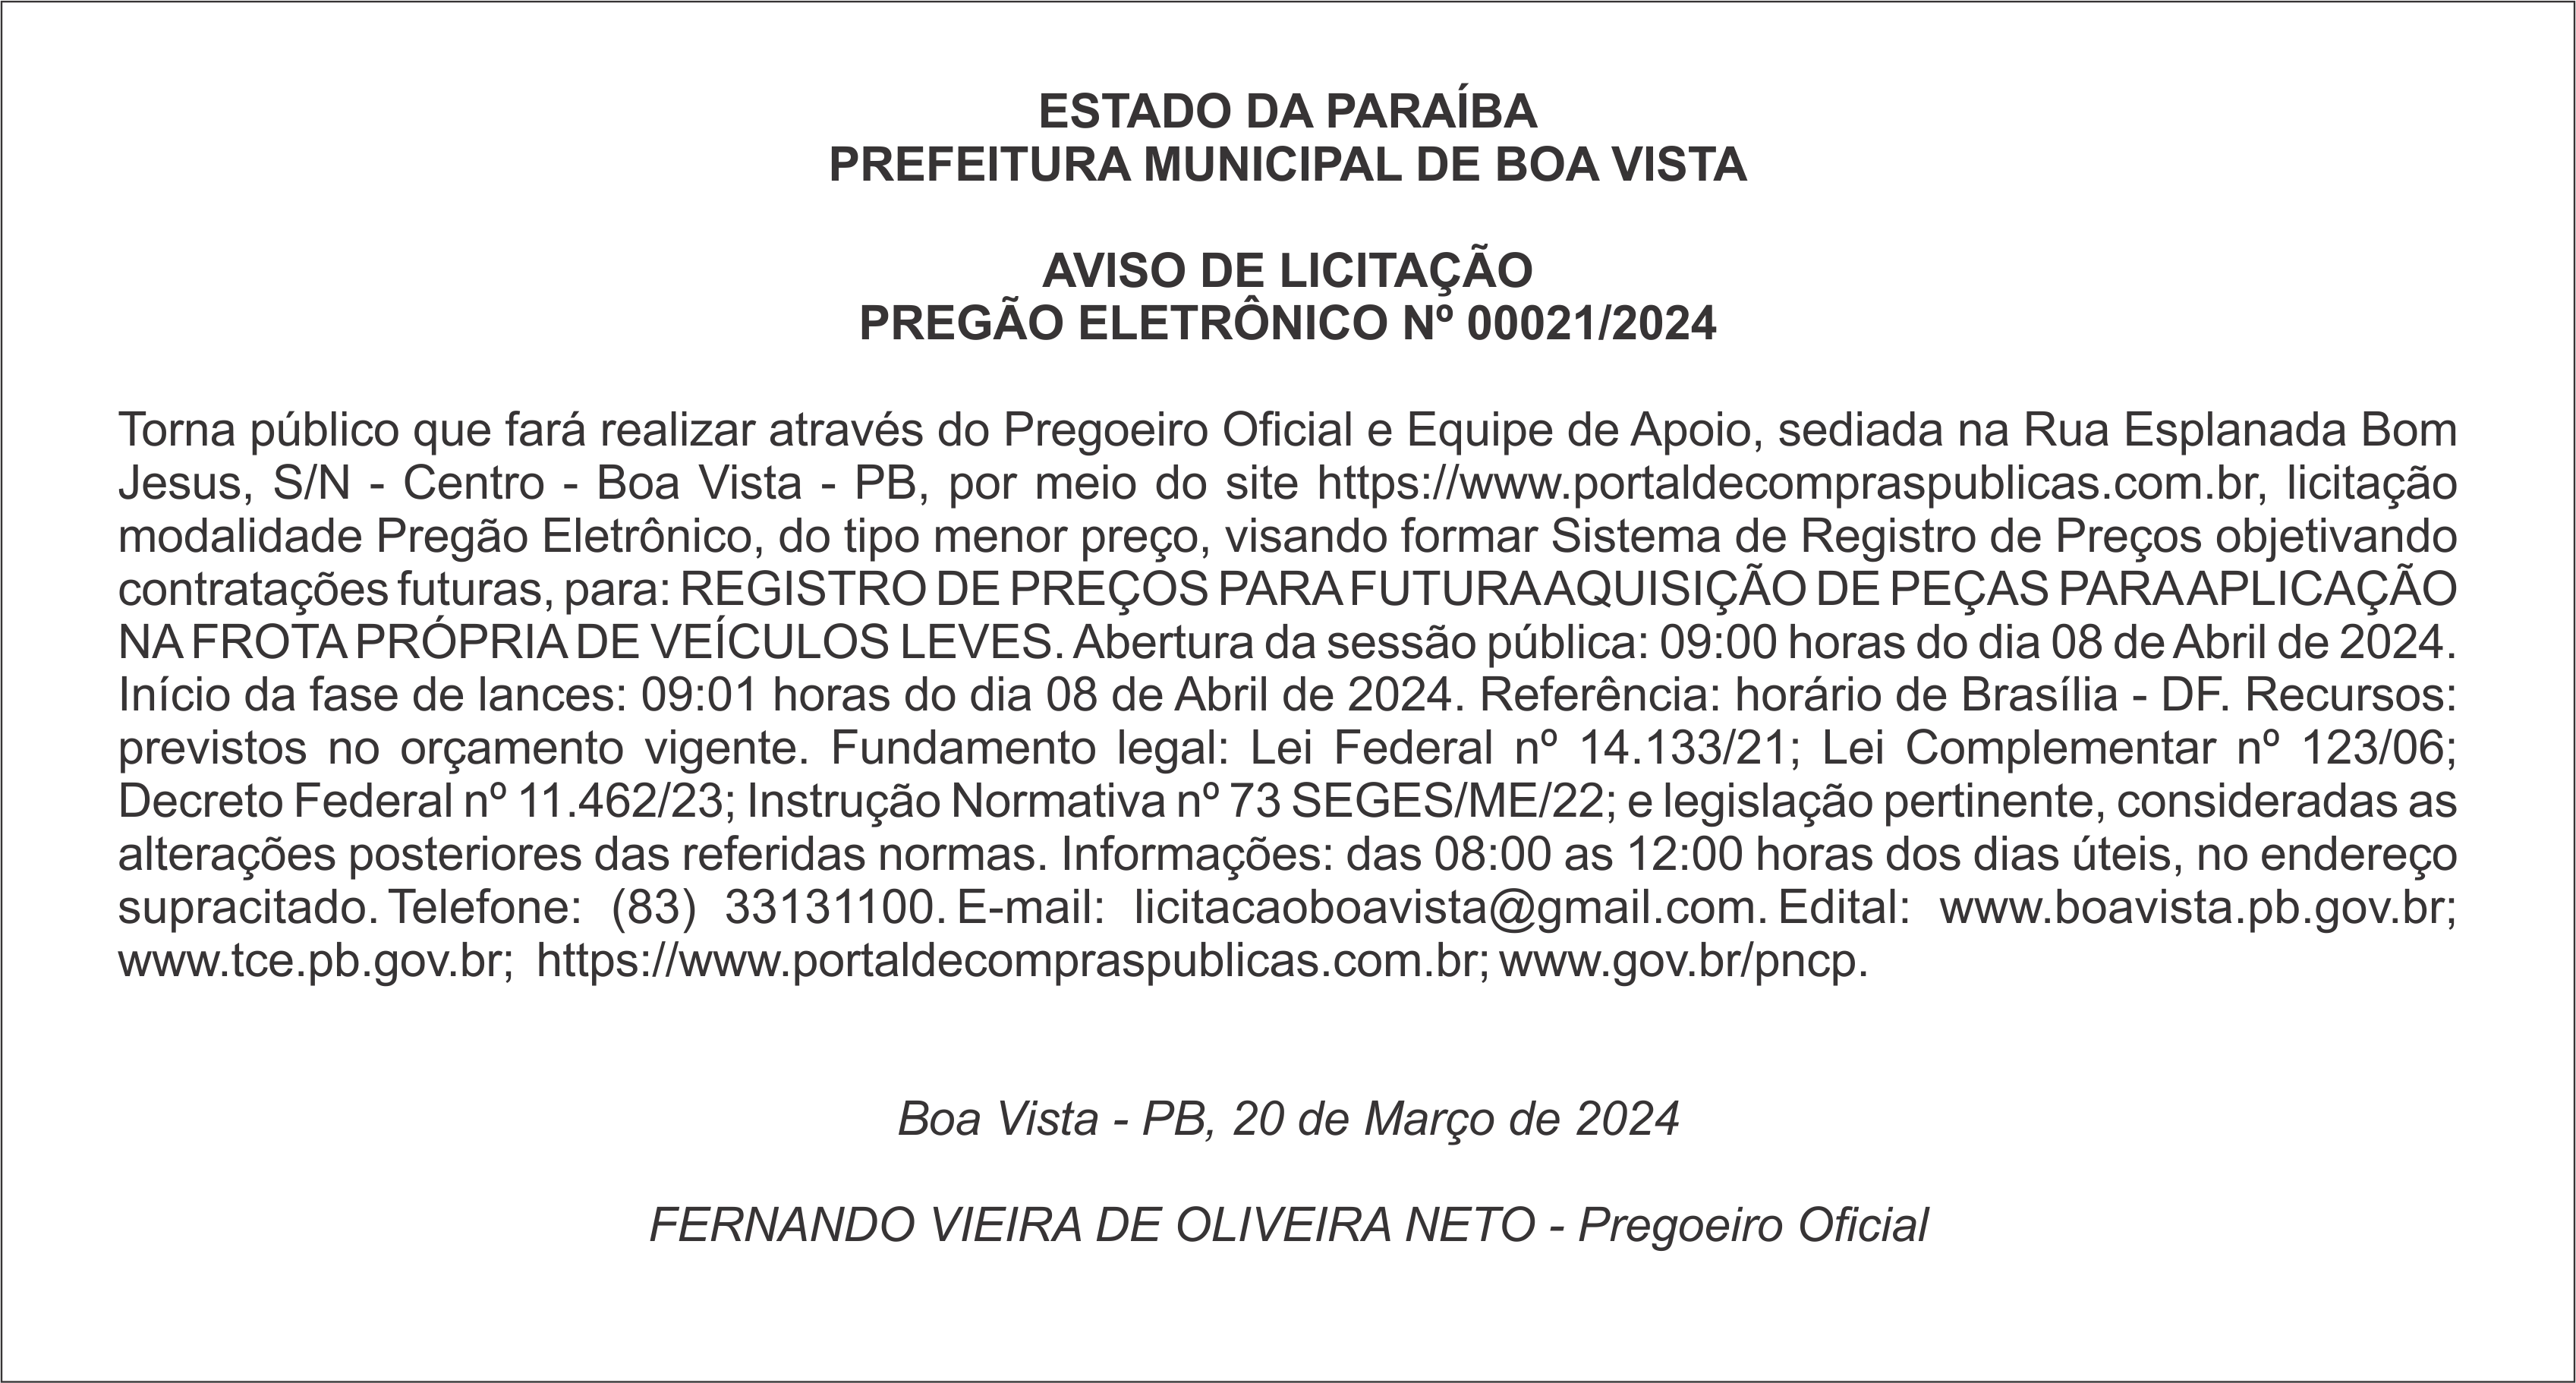 PREFEITURA MUNICIPAL DE BOA VISTA – AVISO DE LICITAÇÃO – PREGÃO ELETRÔNICO Nº 00021/2024